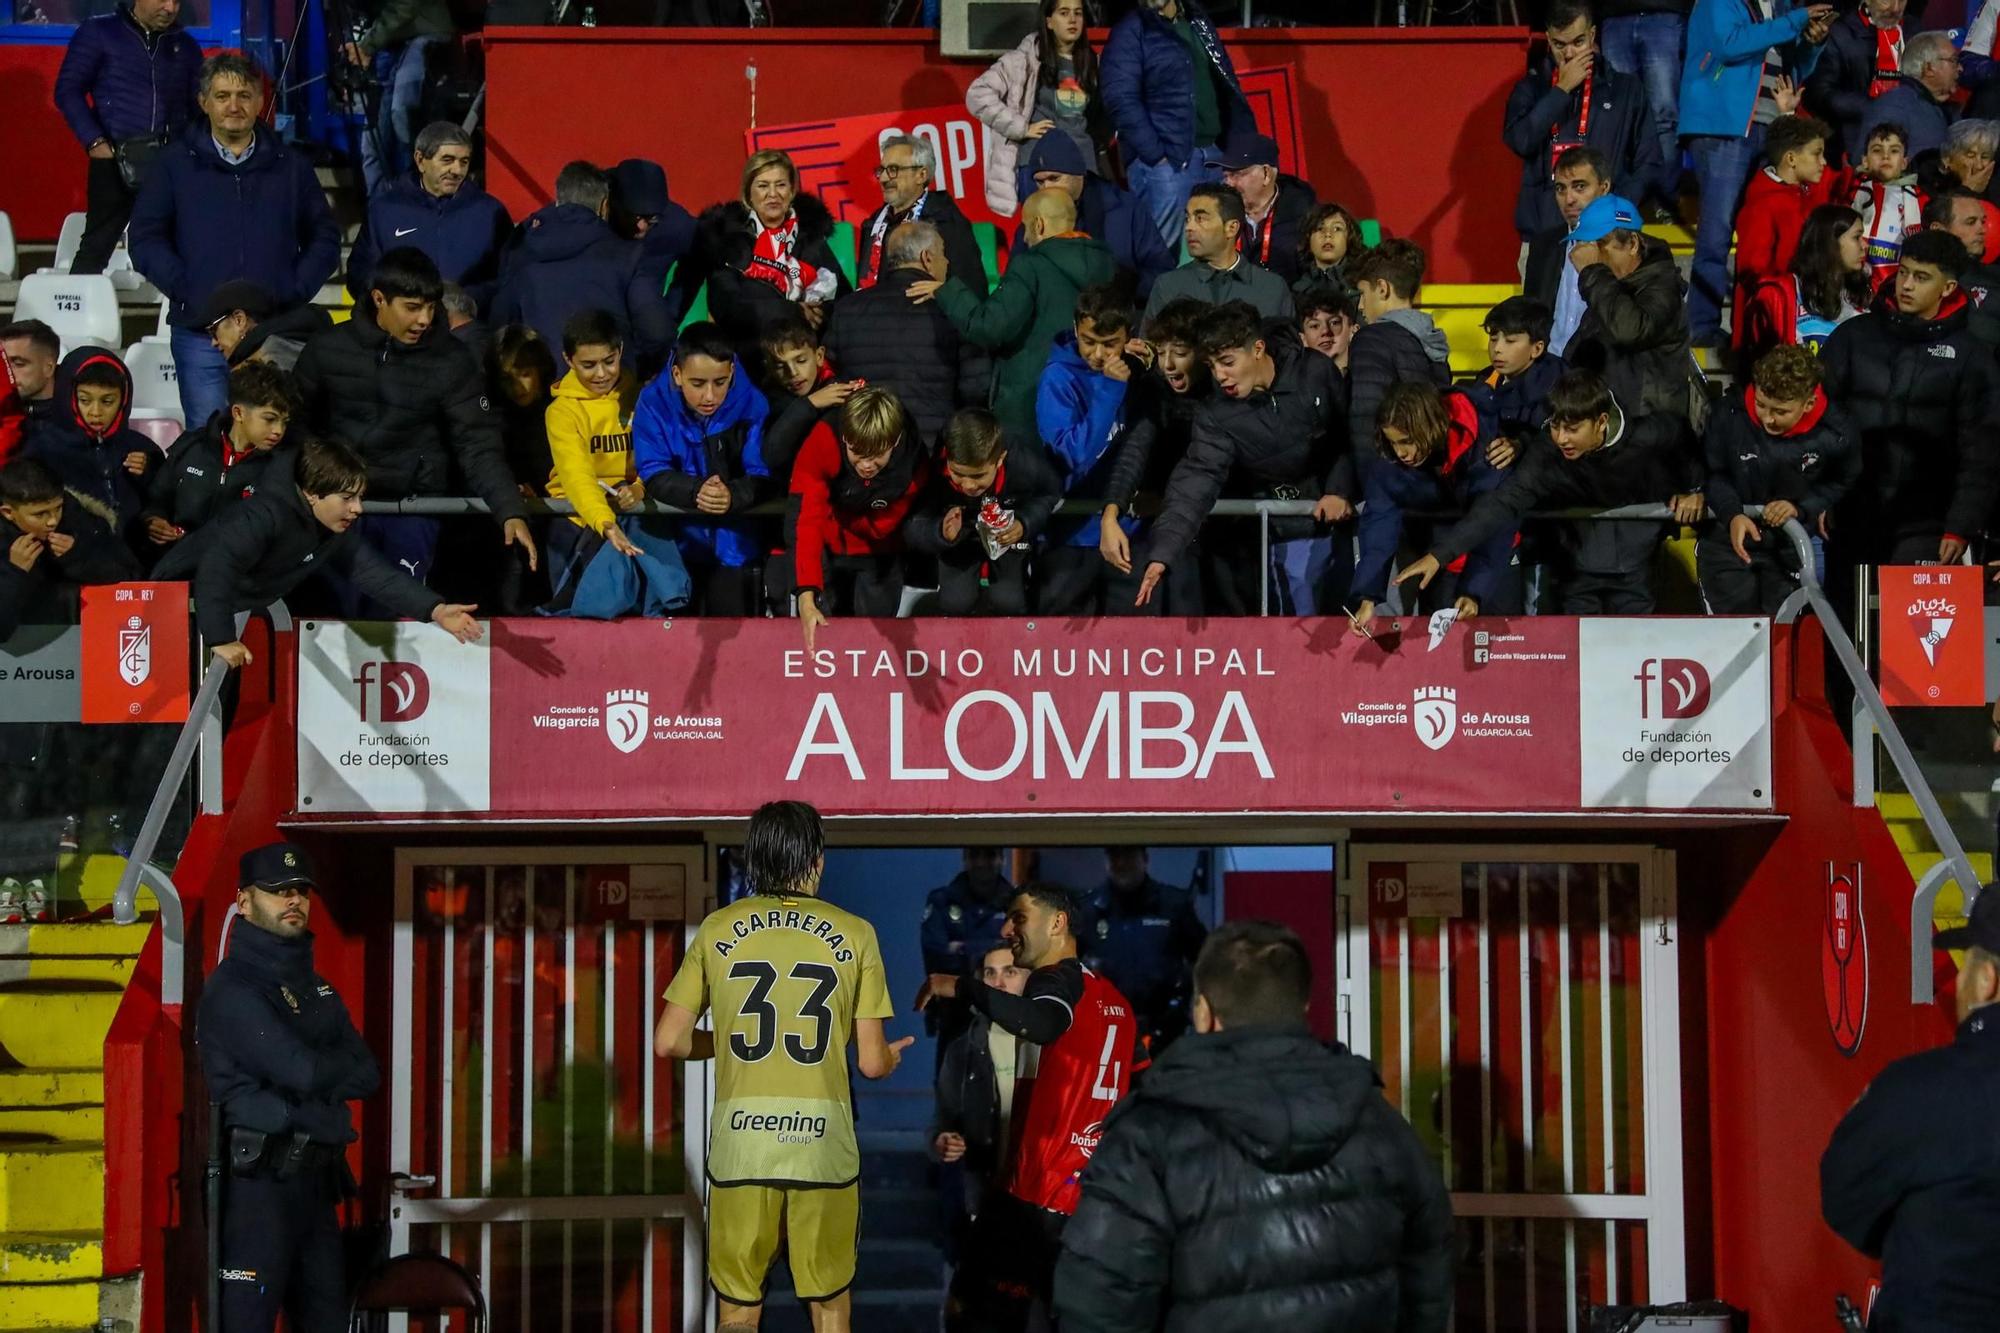 El Arosa disfruta de un día histórico en A Lomba ante un Primera División